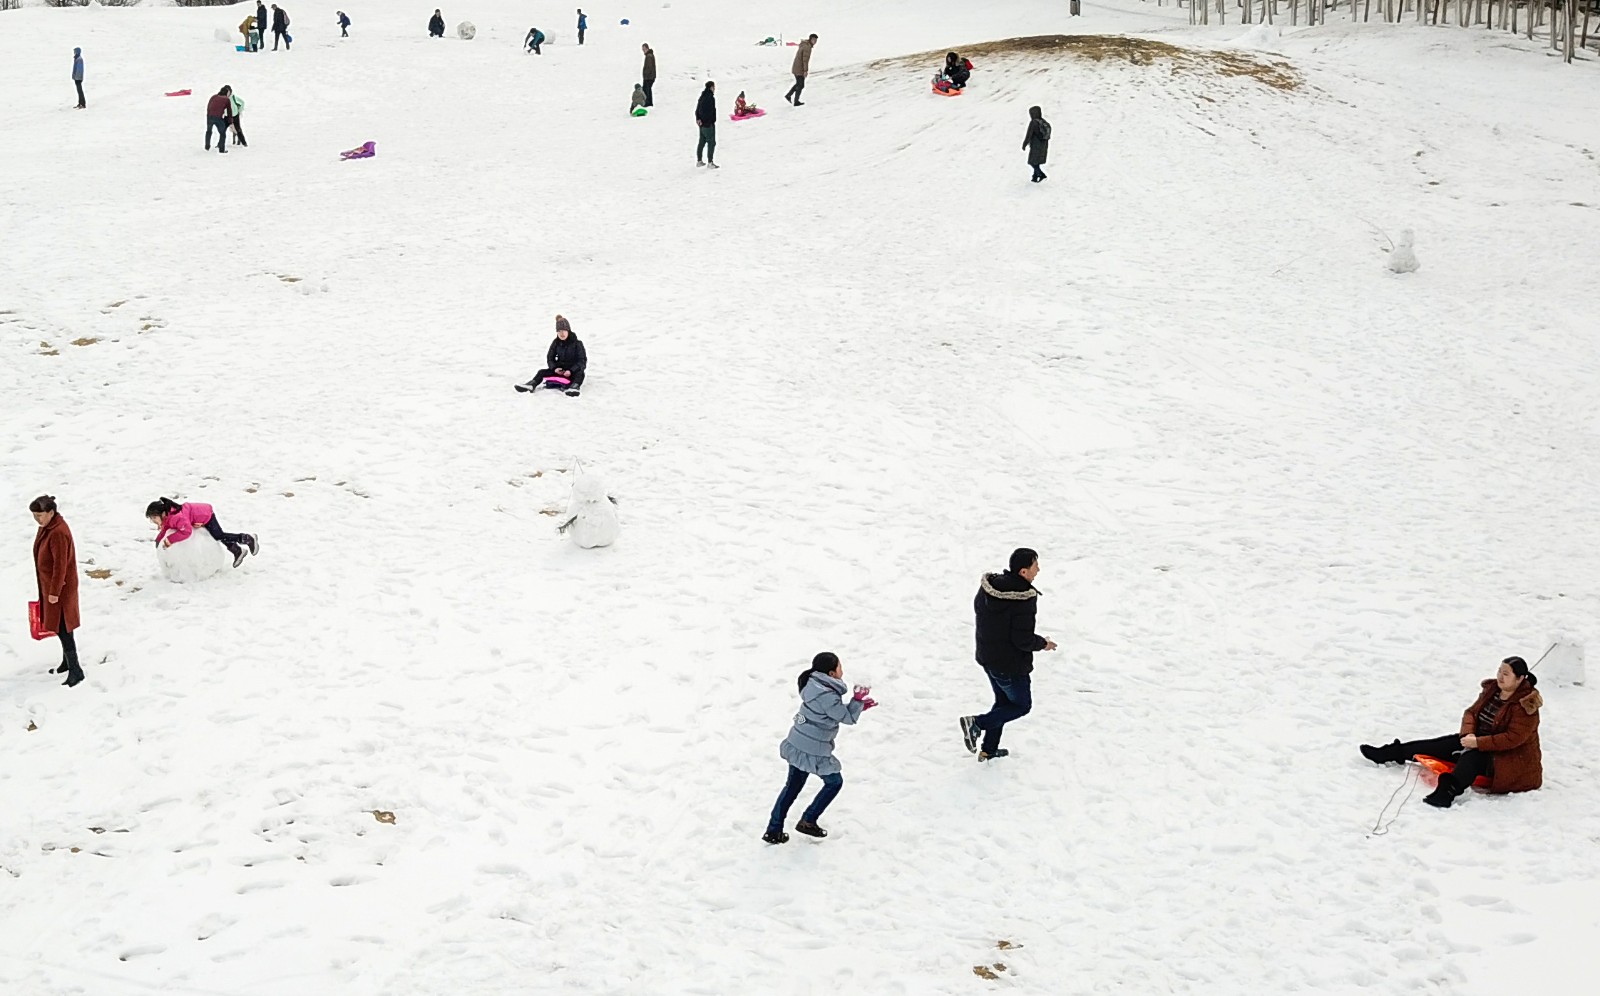 快乐的孩子们在雪地上滚雪球-蓝牛仔影像-中国原创广告影像素材